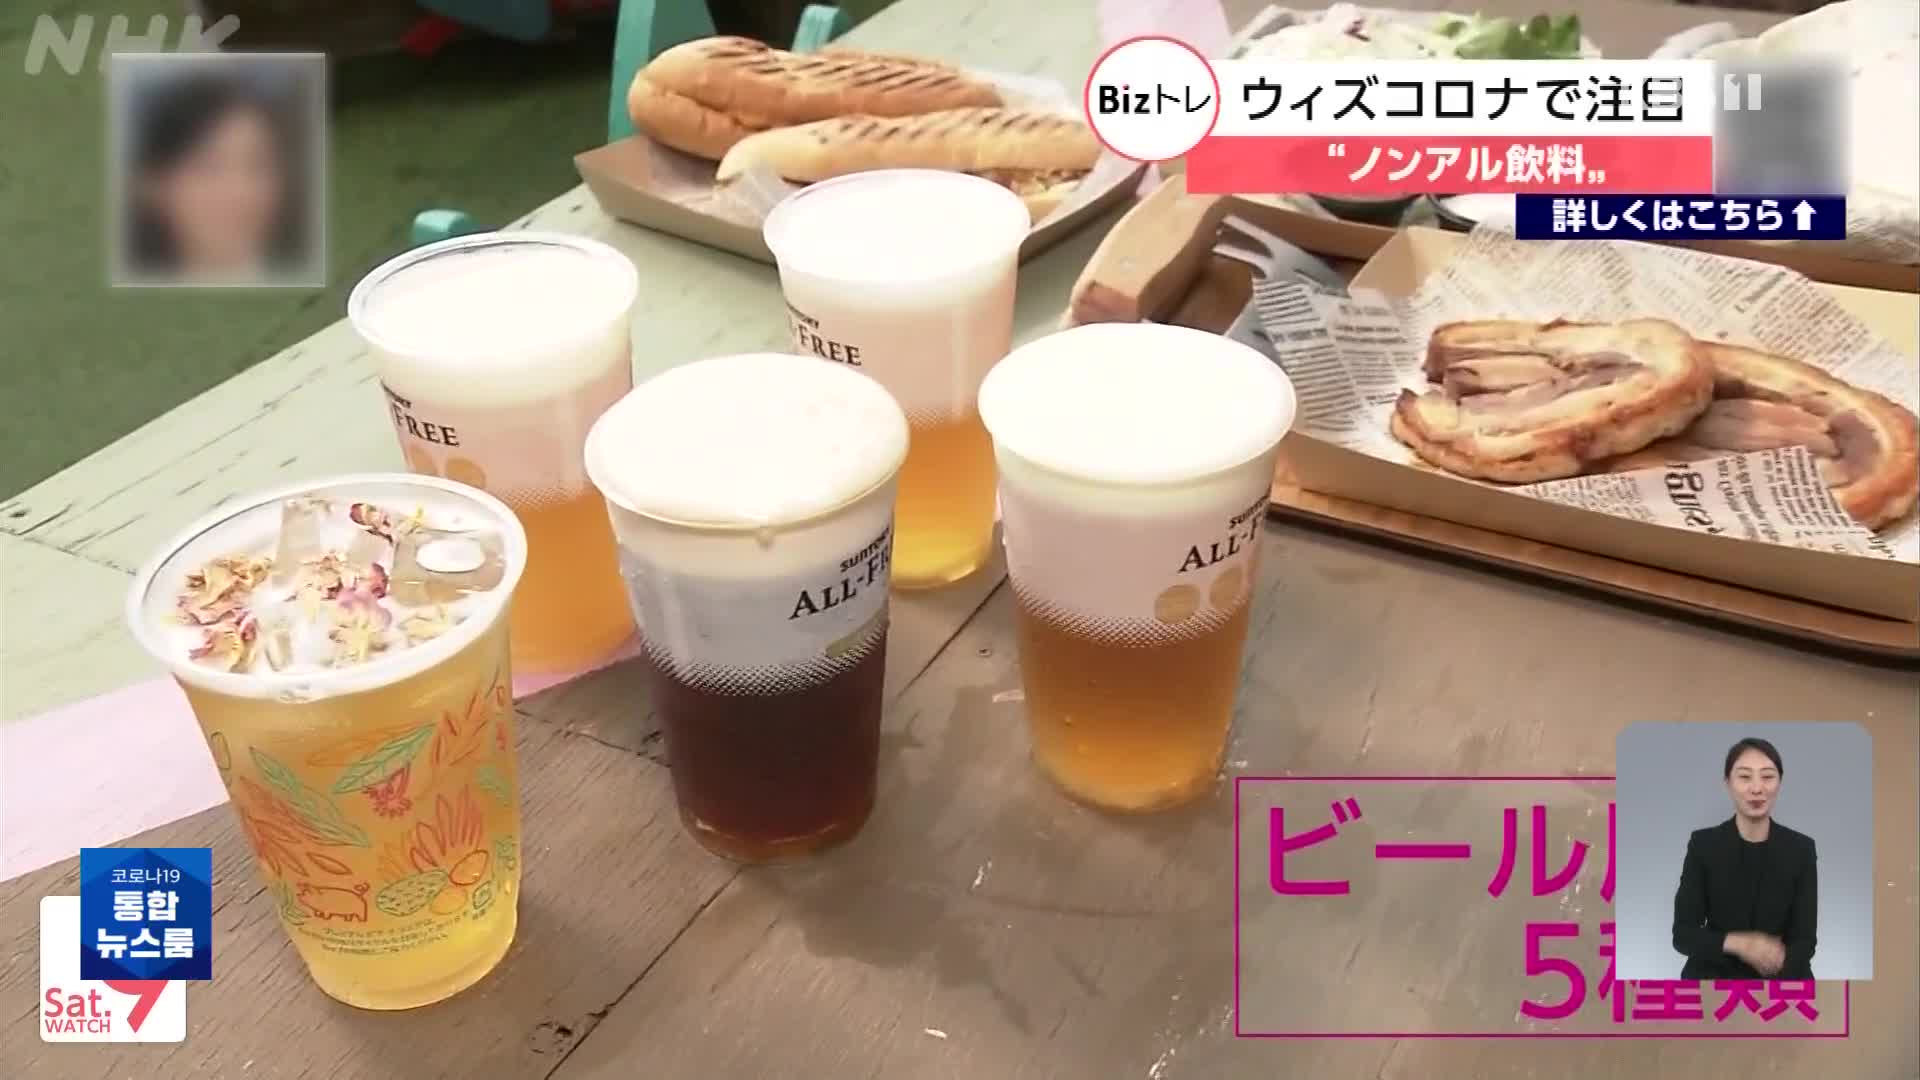 일본, 건강 관심 높아지면서 무알코올 음료 인기